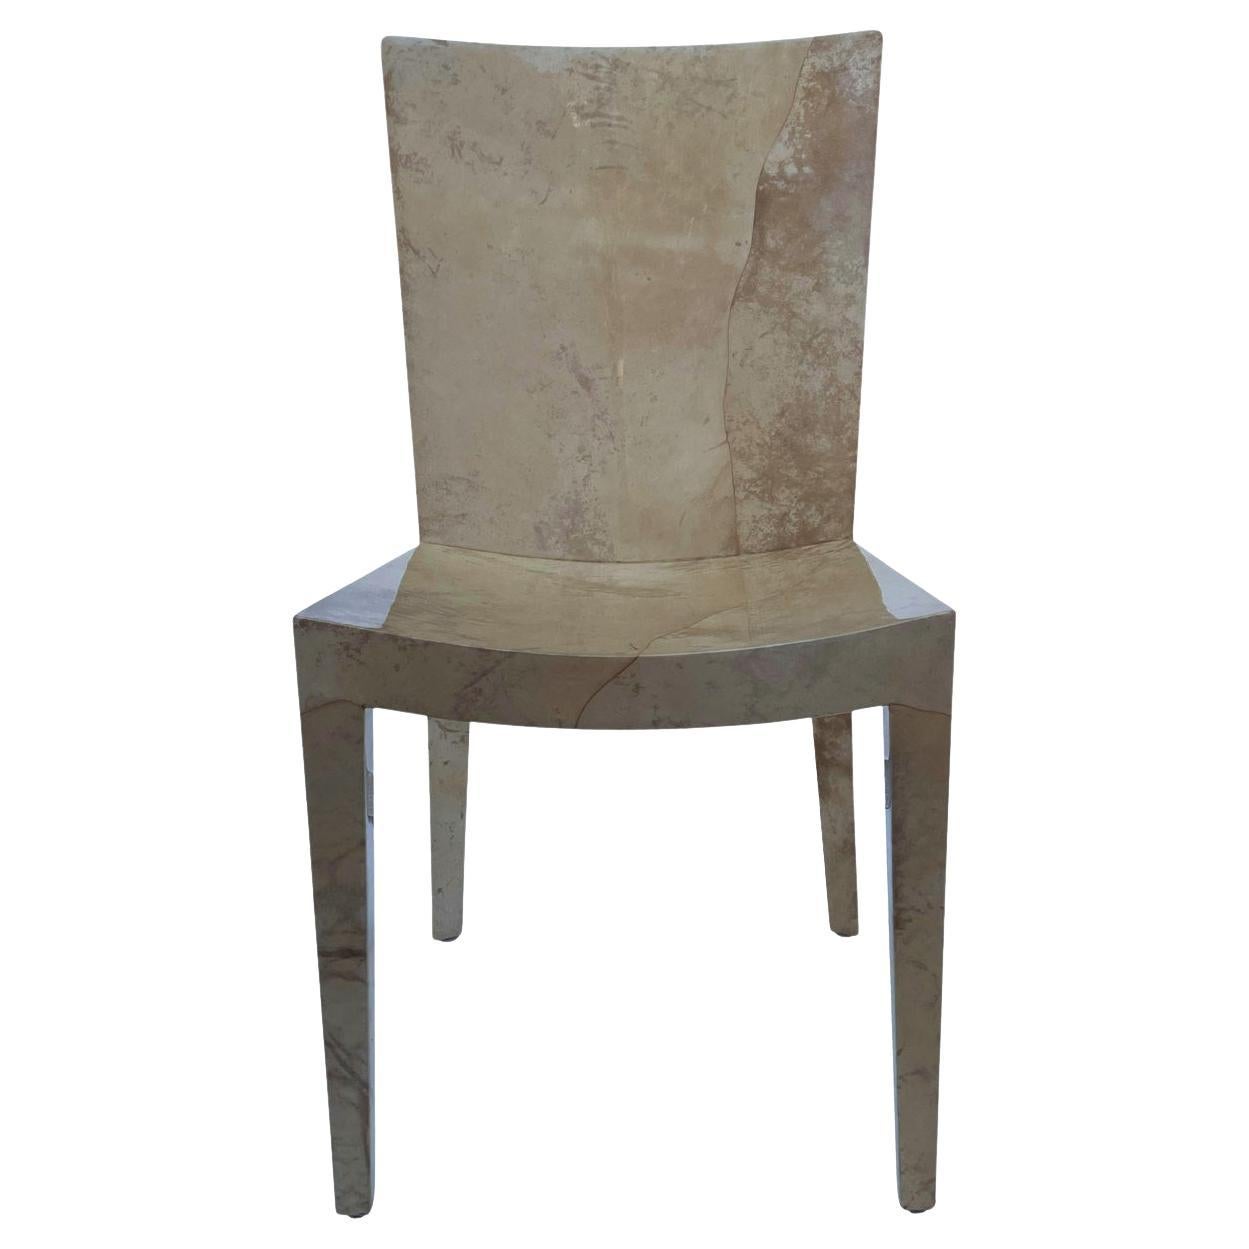 Karl Springer JMF Lacquered Goatskin Desk Chair or Side Chair in Beige & Cream